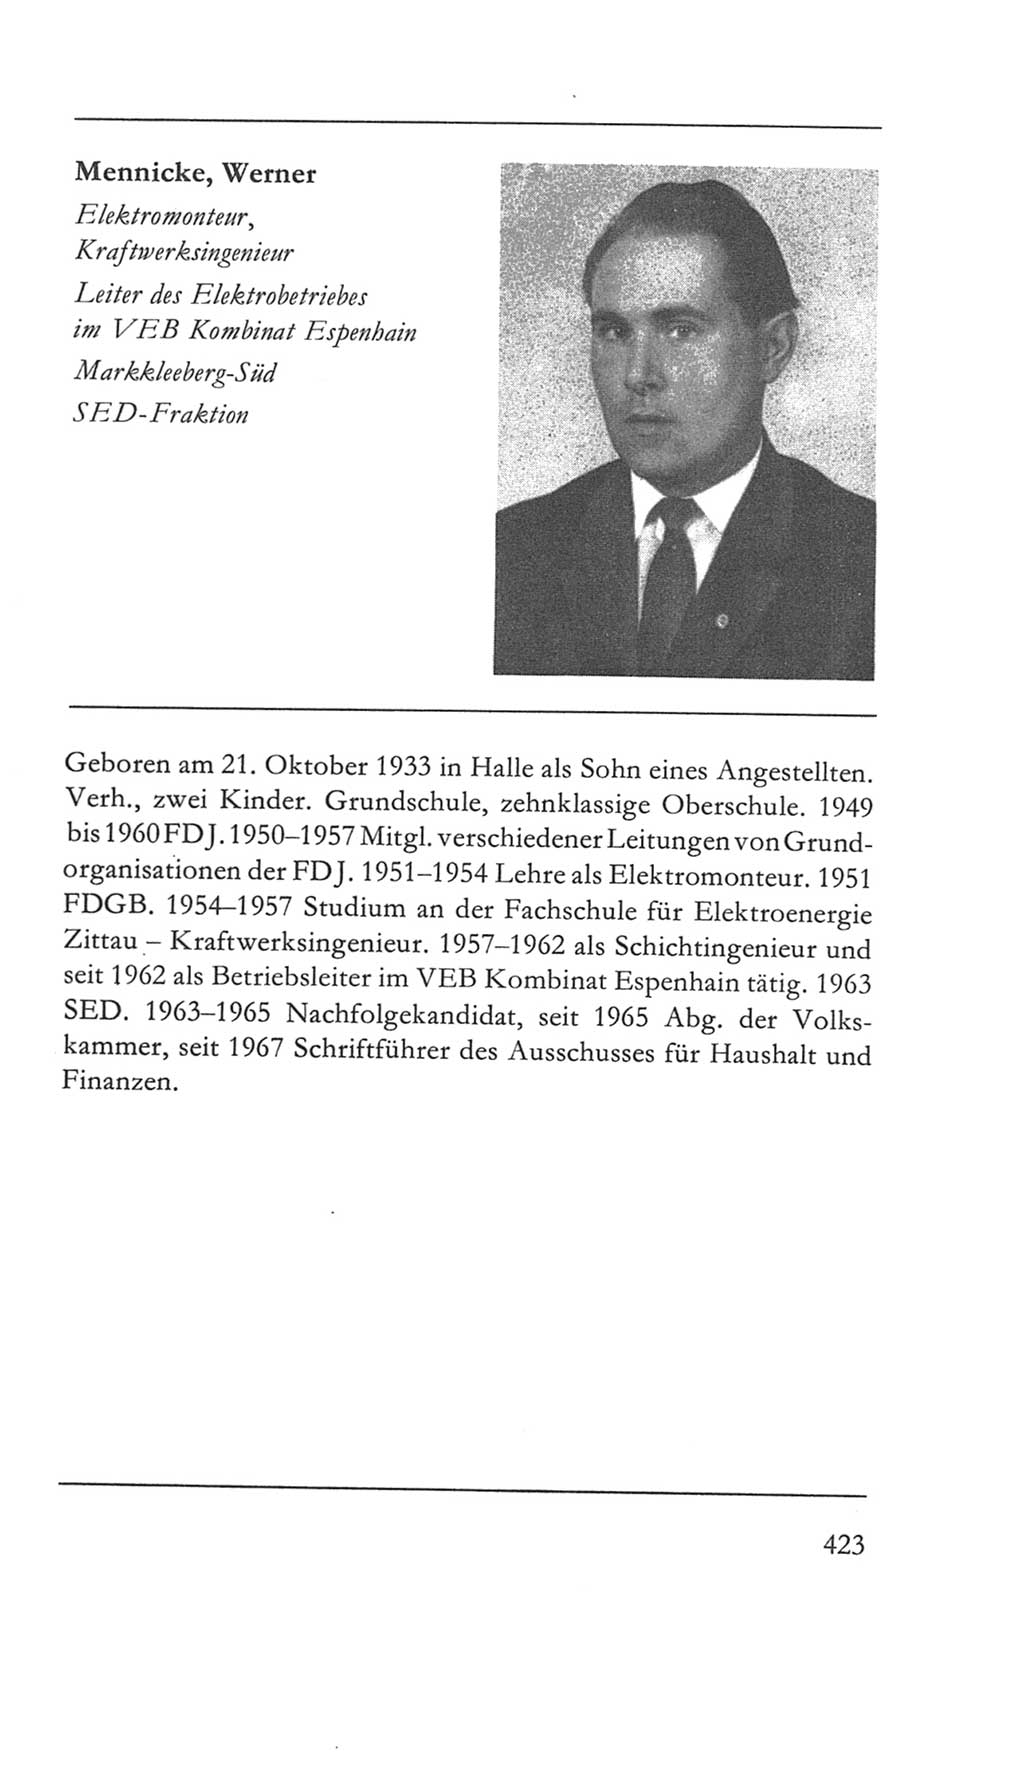 Volkskammer (VK) der Deutschen Demokratischen Republik (DDR) 5. Wahlperiode 1967-1971, Seite 423 (VK. DDR 5. WP. 1967-1971, S. 423)